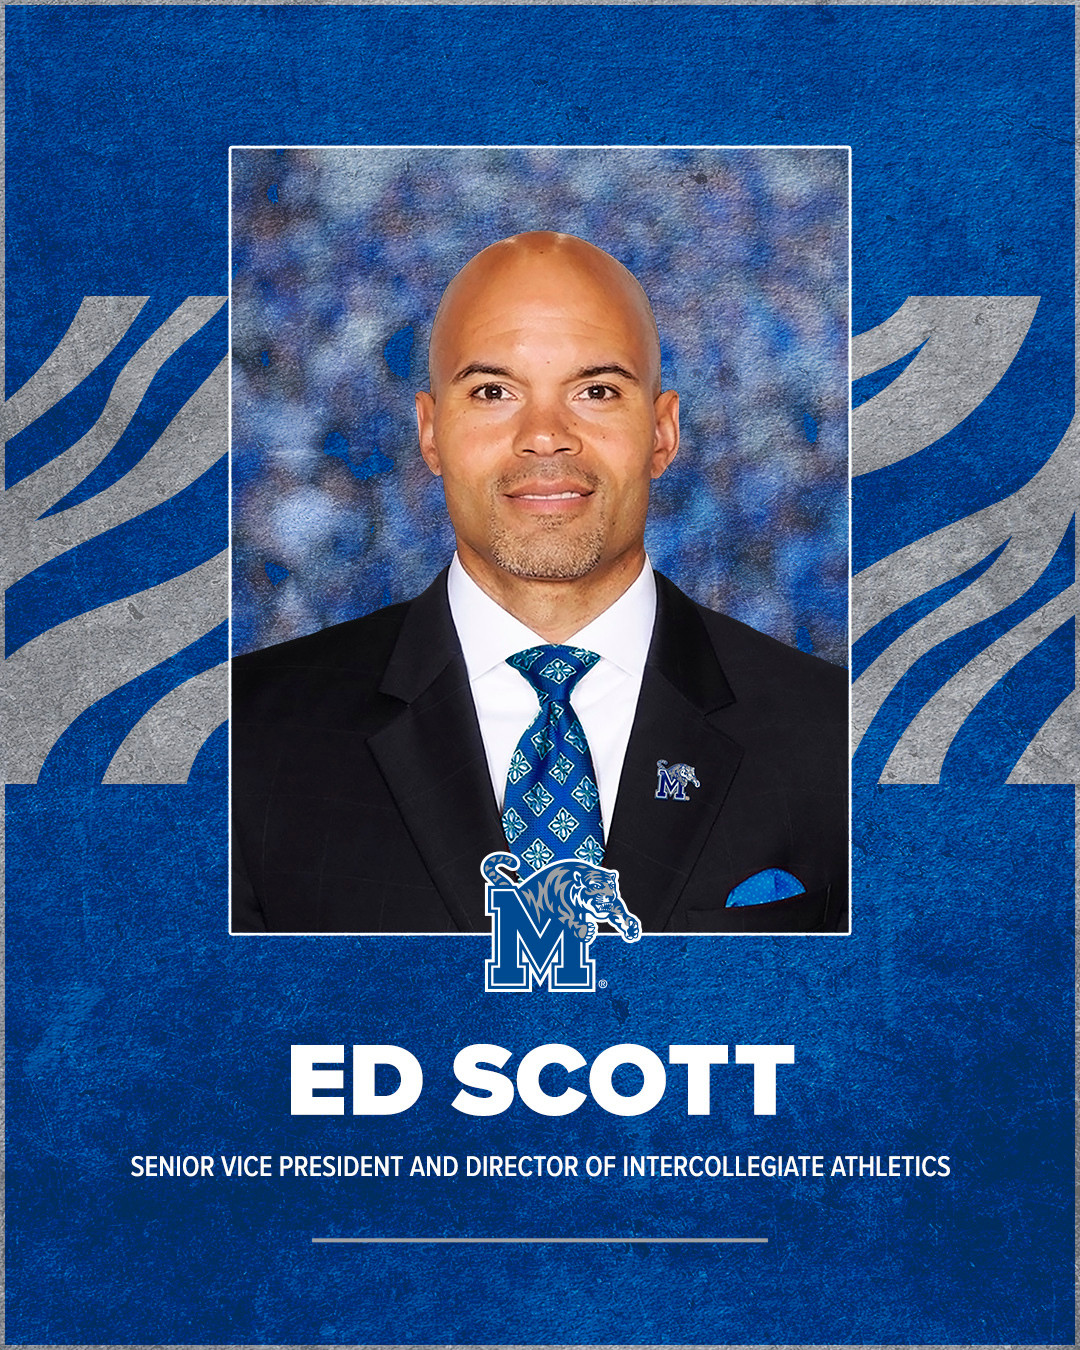 Athletic Director Ed Scott